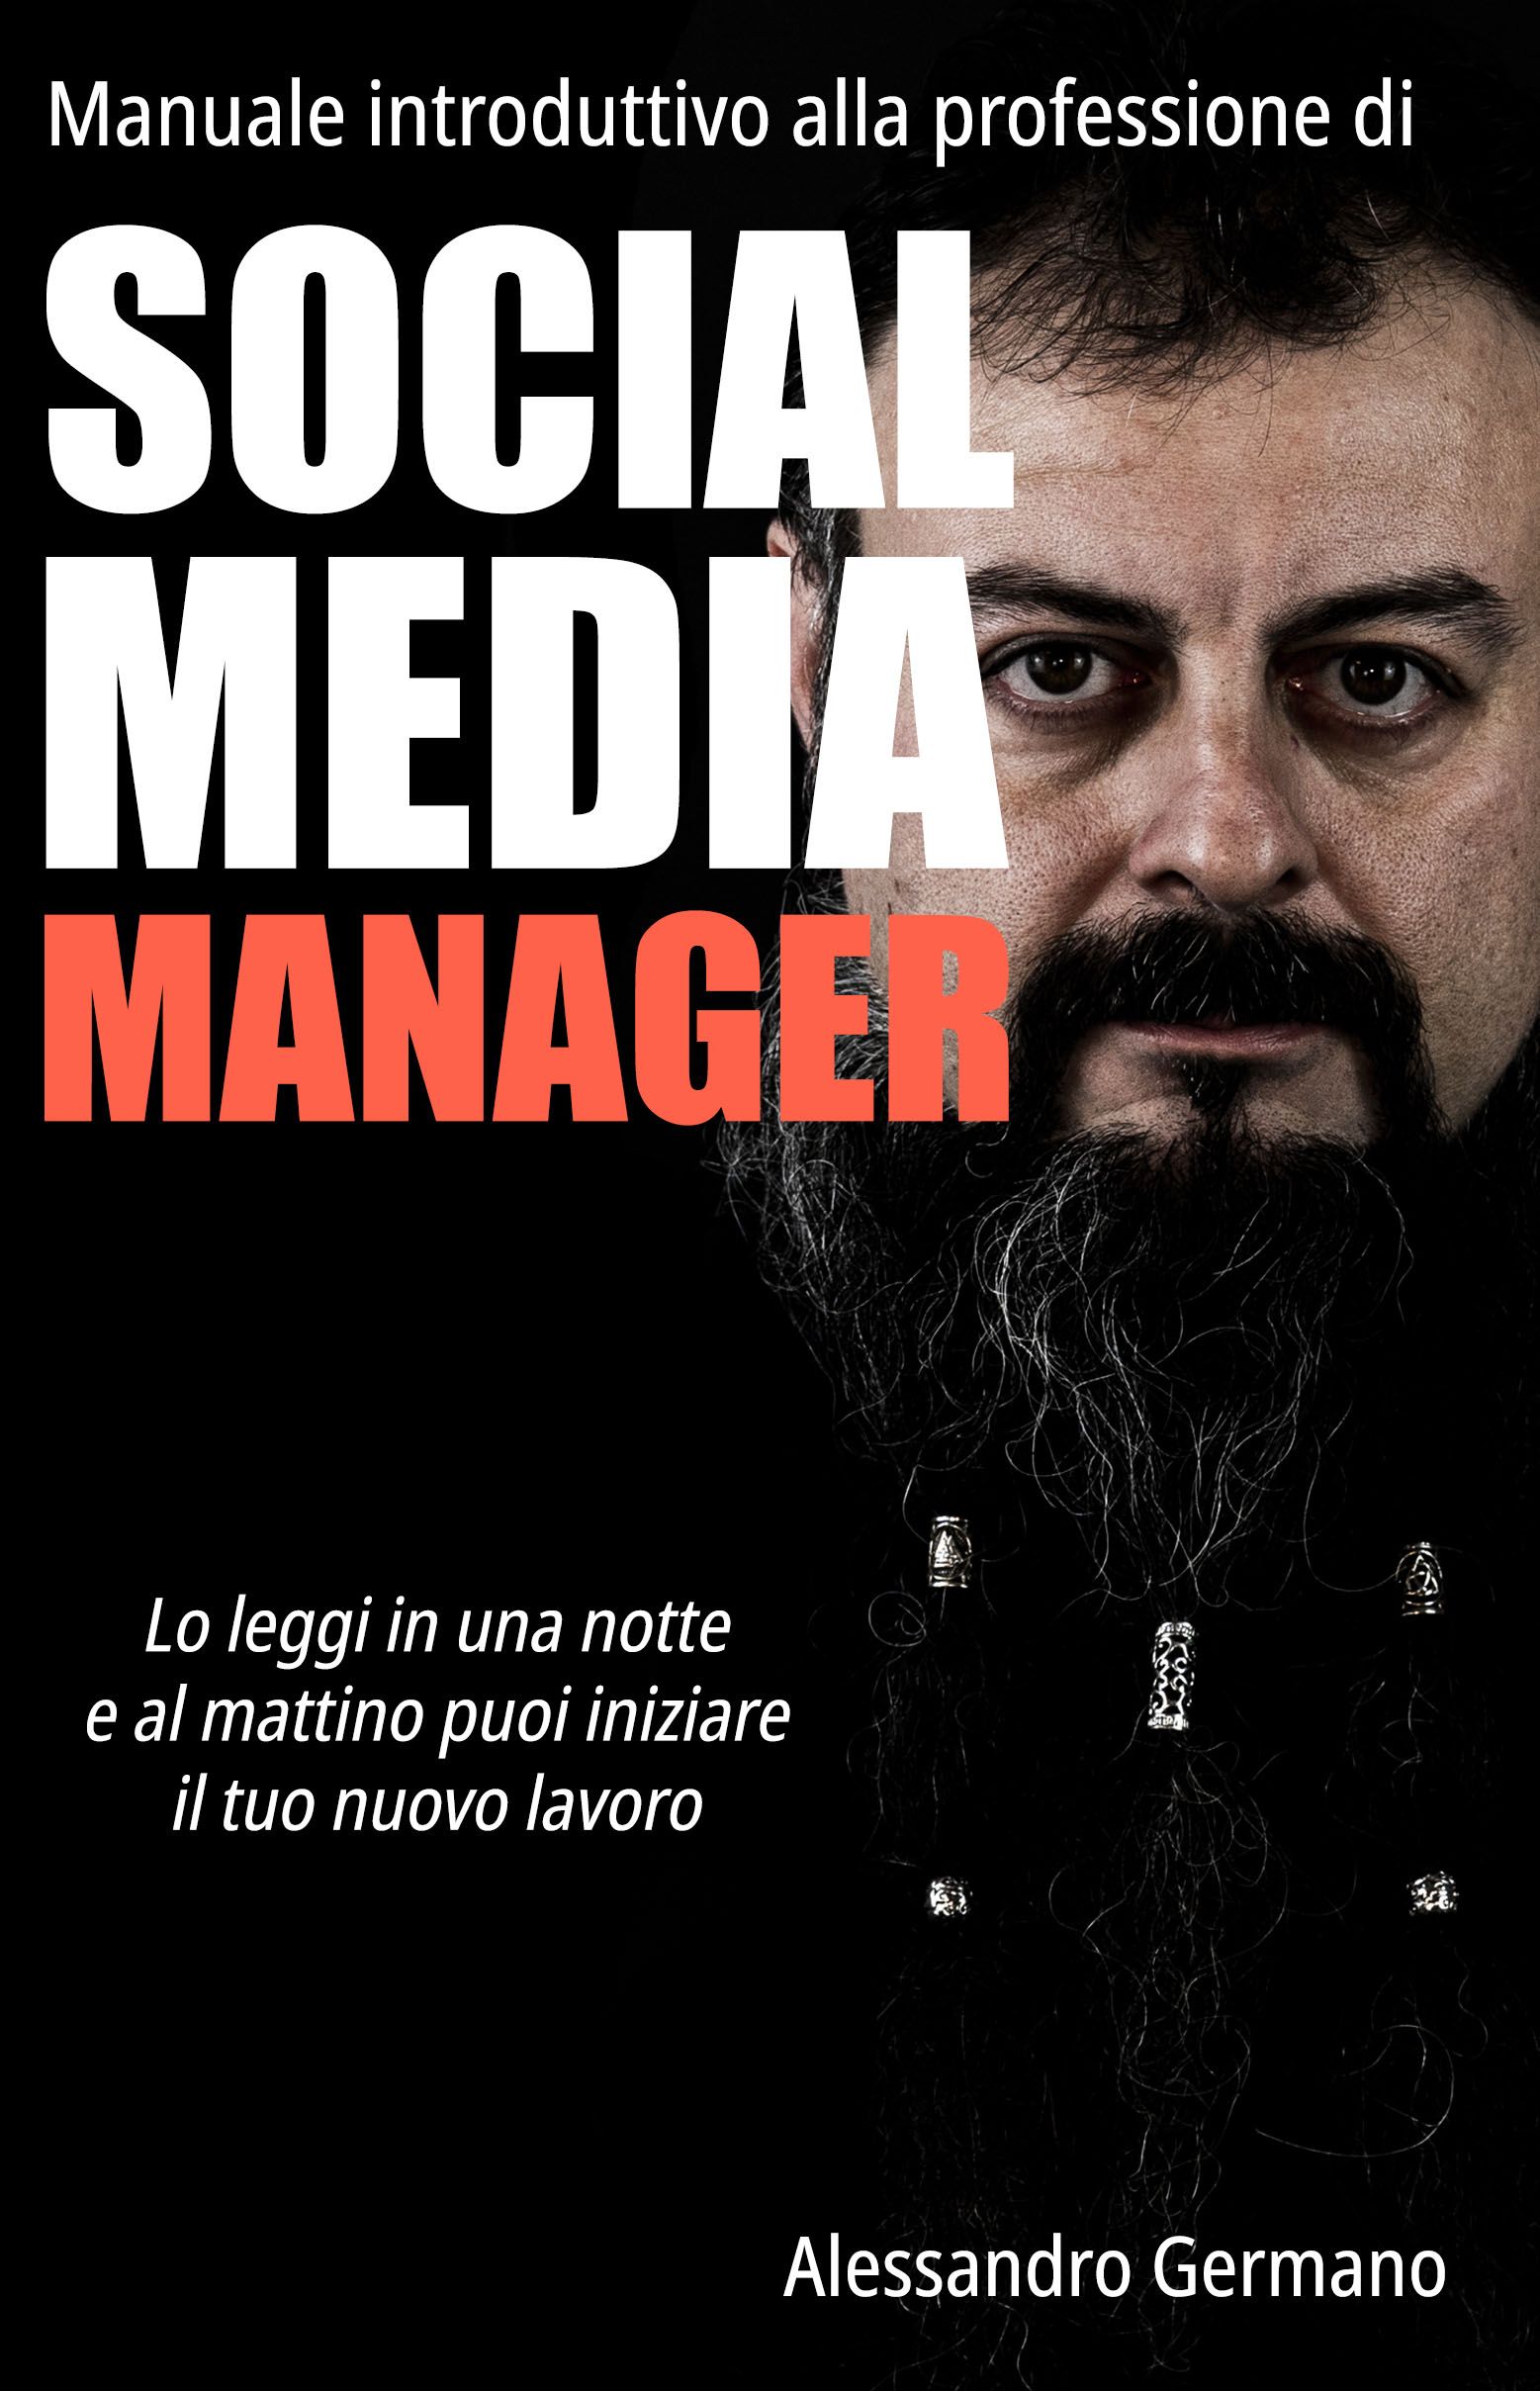 Libro manuale Introduttivo alla professione di Social Media Manager autore Alessandro Germano